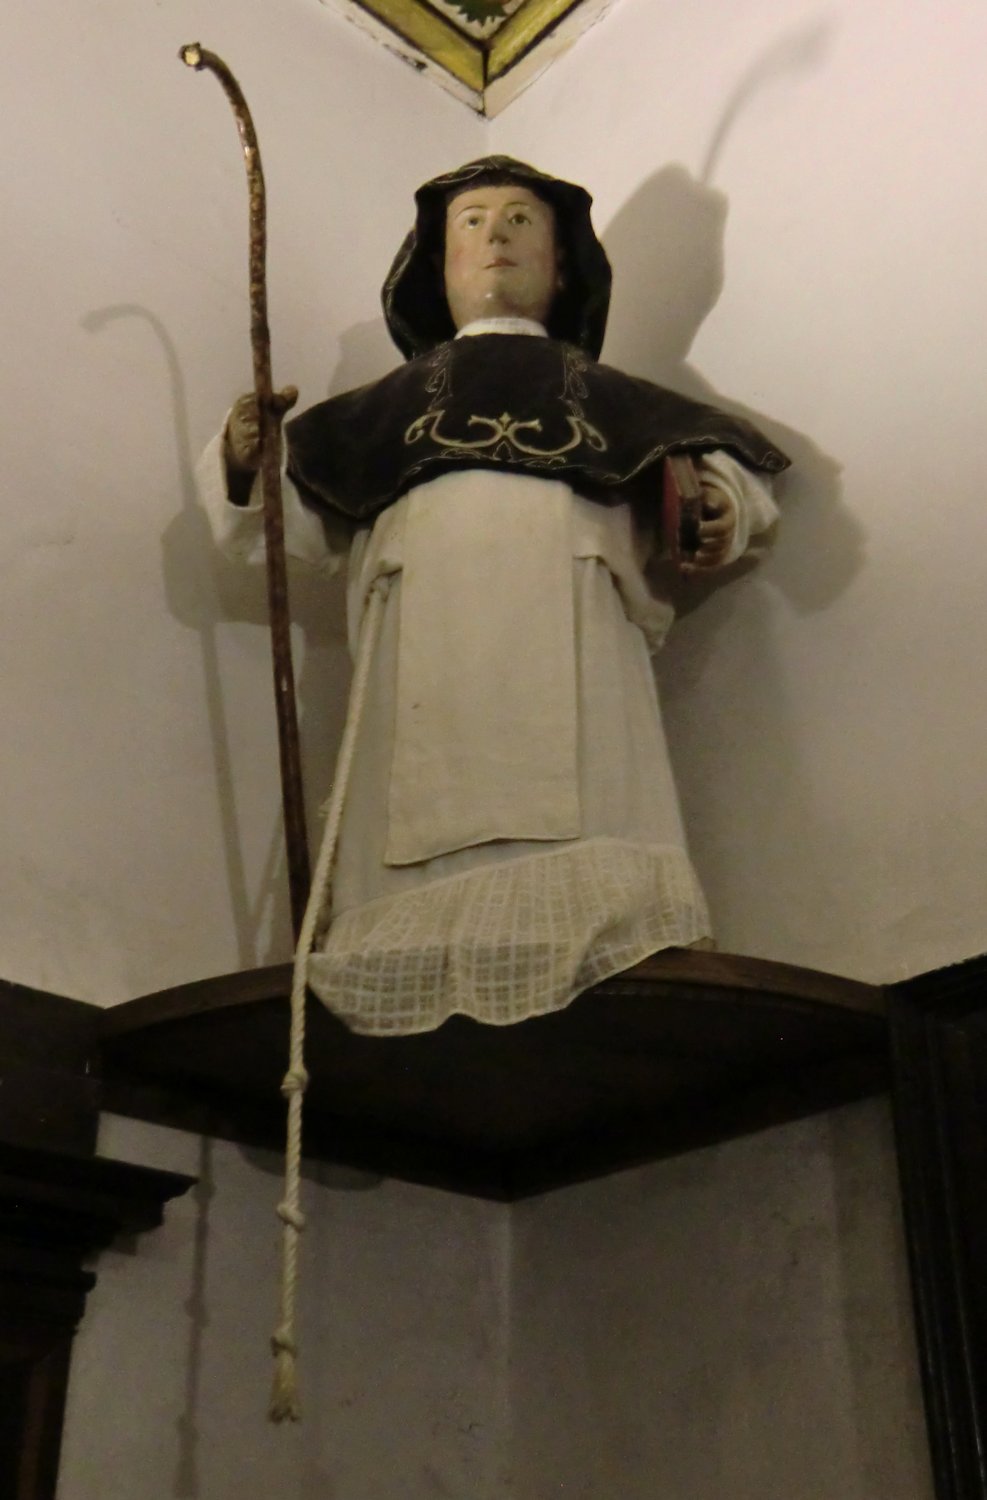 Statue: Gundisalvus mit Strick gegürtet als Zeichen für einen Einsiedler, 16./17. Jahrhundert, in der Sakristei der Klosterkirche in Amarante